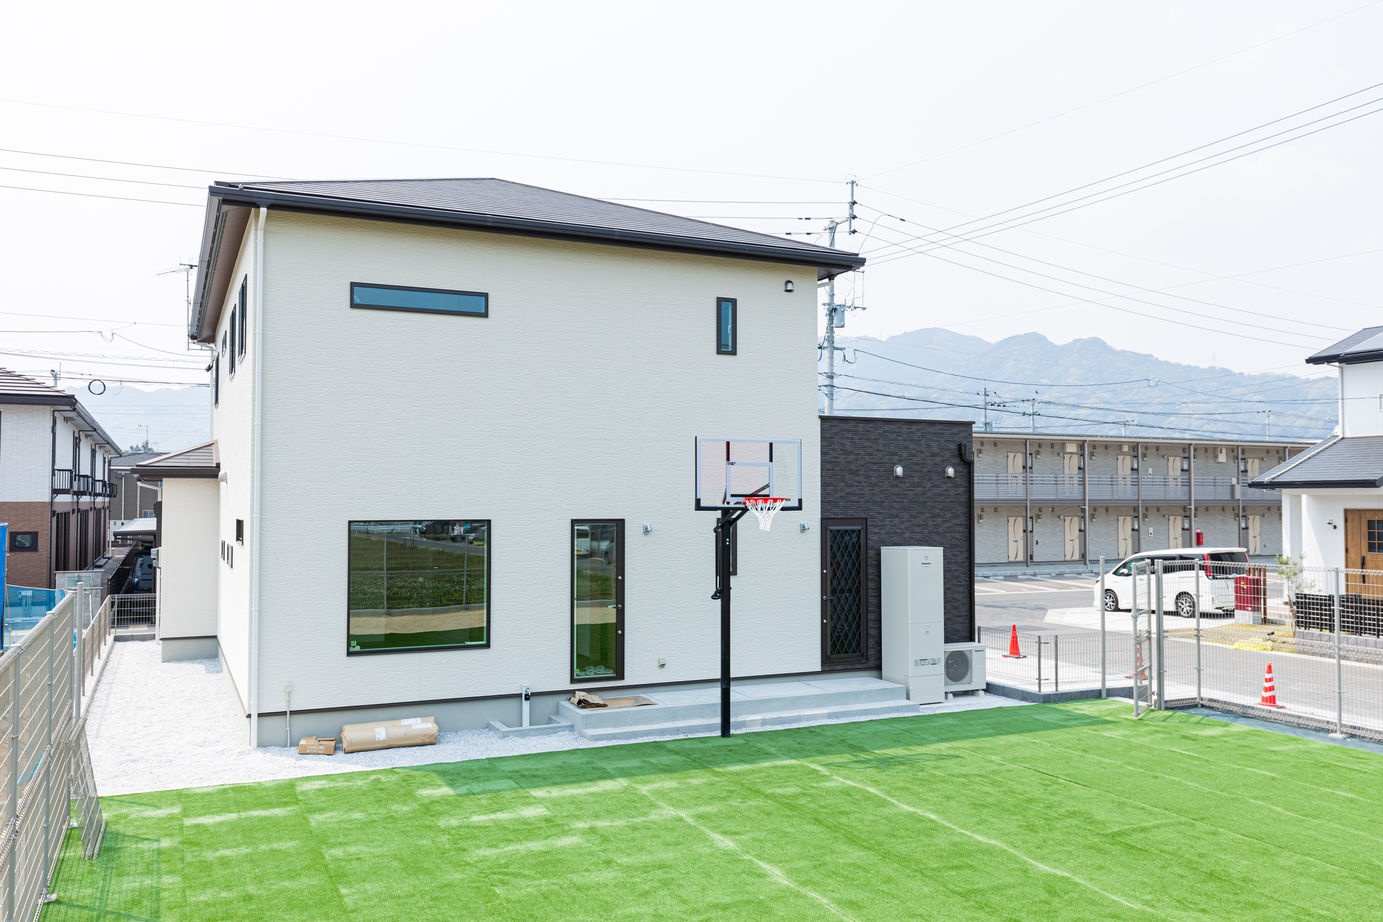 SUUMO】 庭に広い芝生の本格的なバスケットコートのある家 - 鬼丸ホーム の建築実例詳細 | 注文住宅